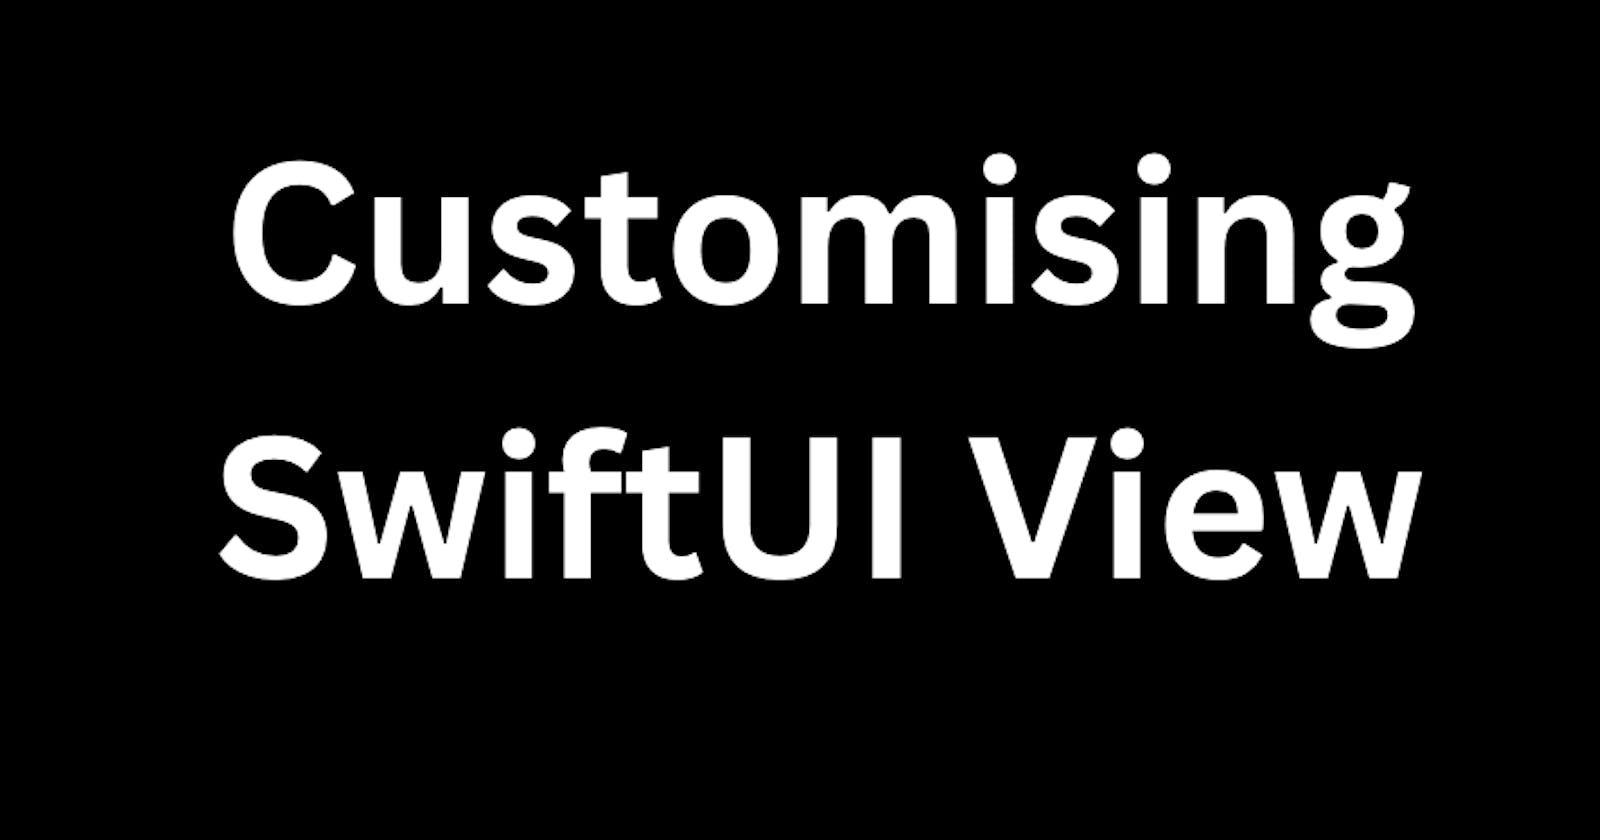 SwiftUI View Extensions vs ViewModifier vs Custom Views